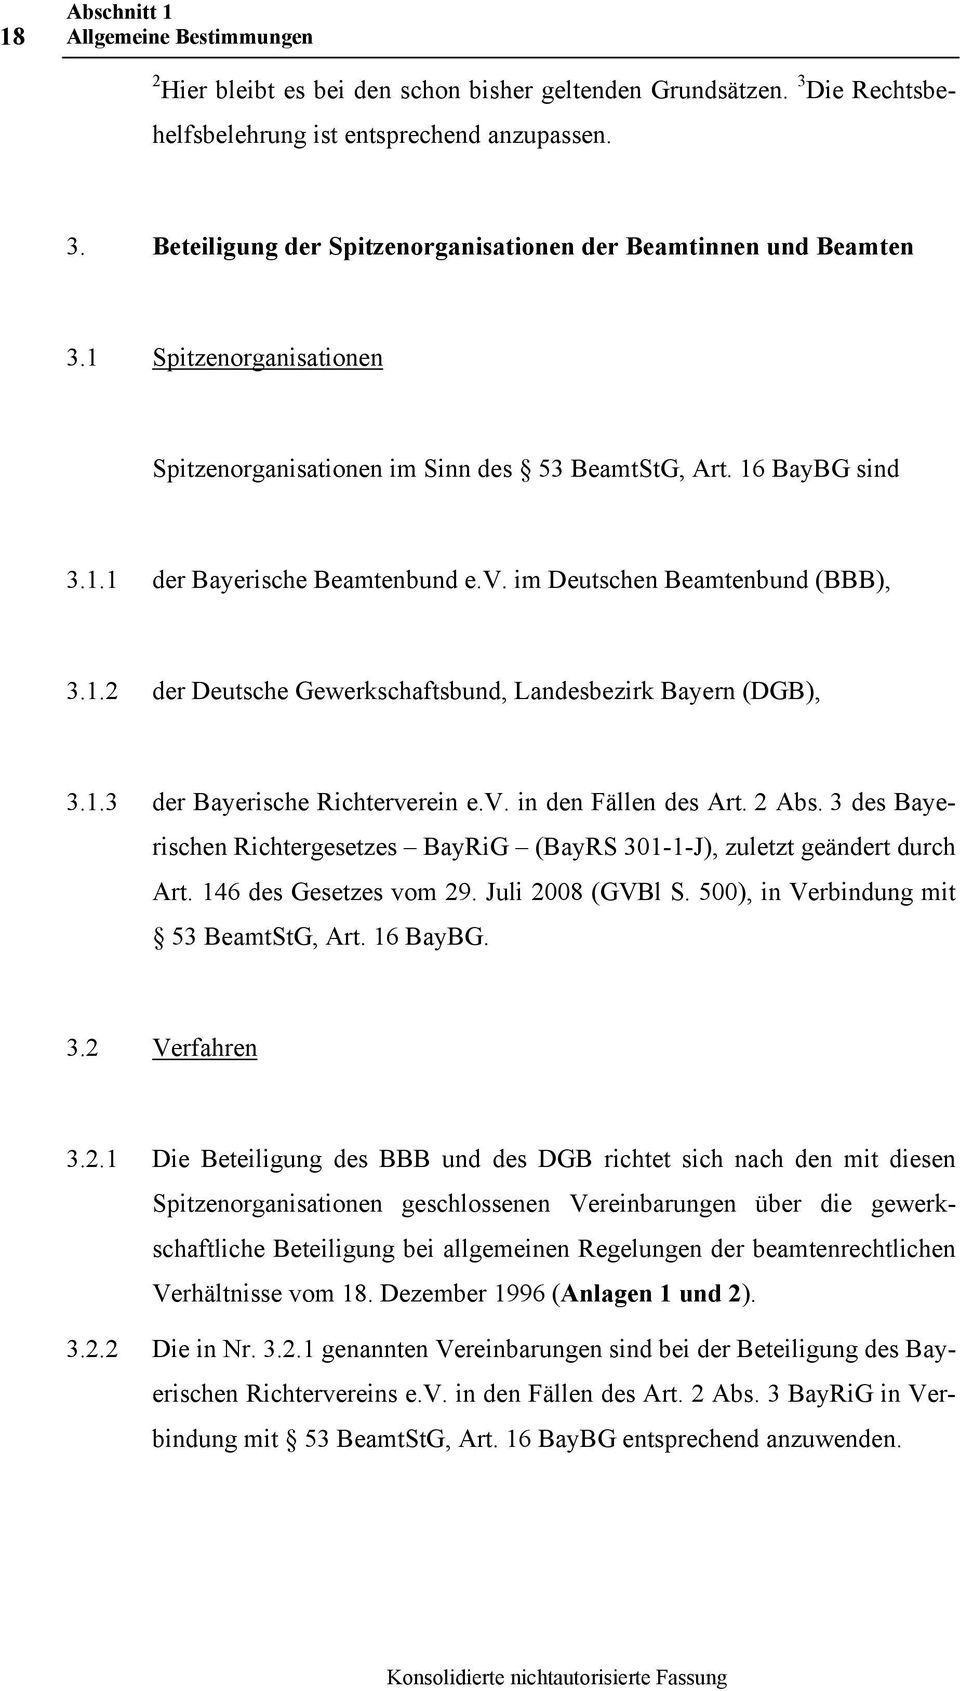 1.3 der Bayerische Richterverein e.v. in den Fällen des Art. 2 Abs. 3 des Bayerischen Richtergesetzes BayRiG (BayRS 301-1-J), zuletzt geändert durch Art. 146 des Gesetzes vom 29. Juli 2008 (GVBl S.